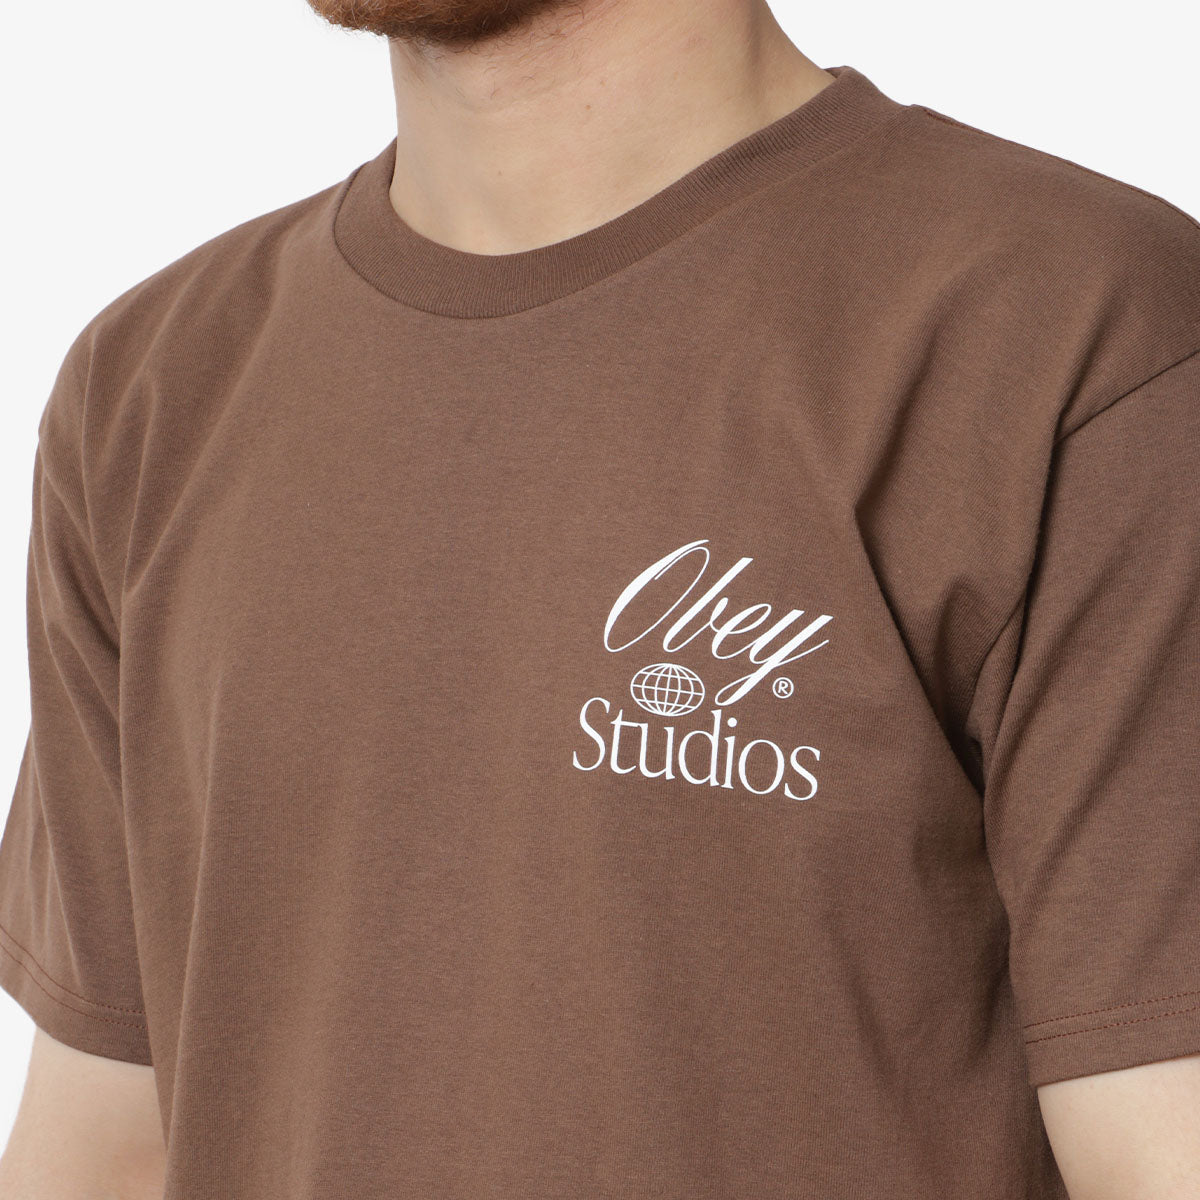 OBEY Studios Worldwide T-Shirt, Silt, Detail Shot 3